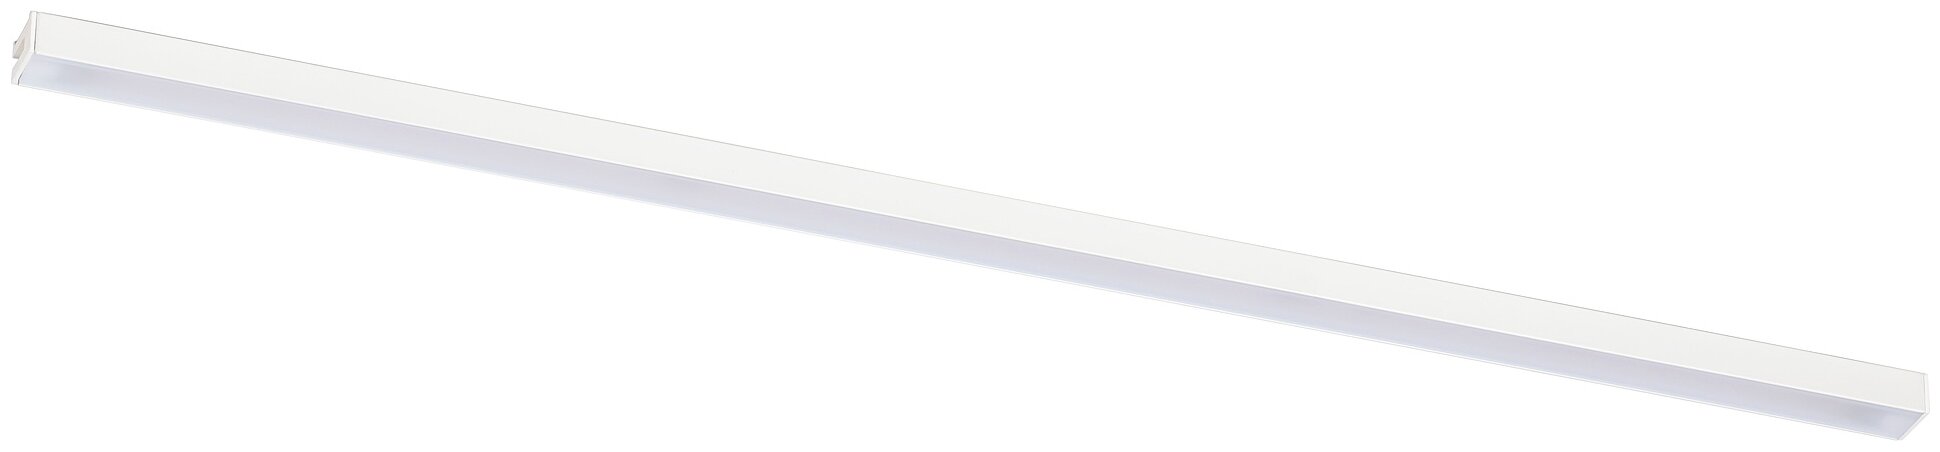 MITTLED митлед светодиодная подсветка столешницы 60 см регулируемая яркость белый